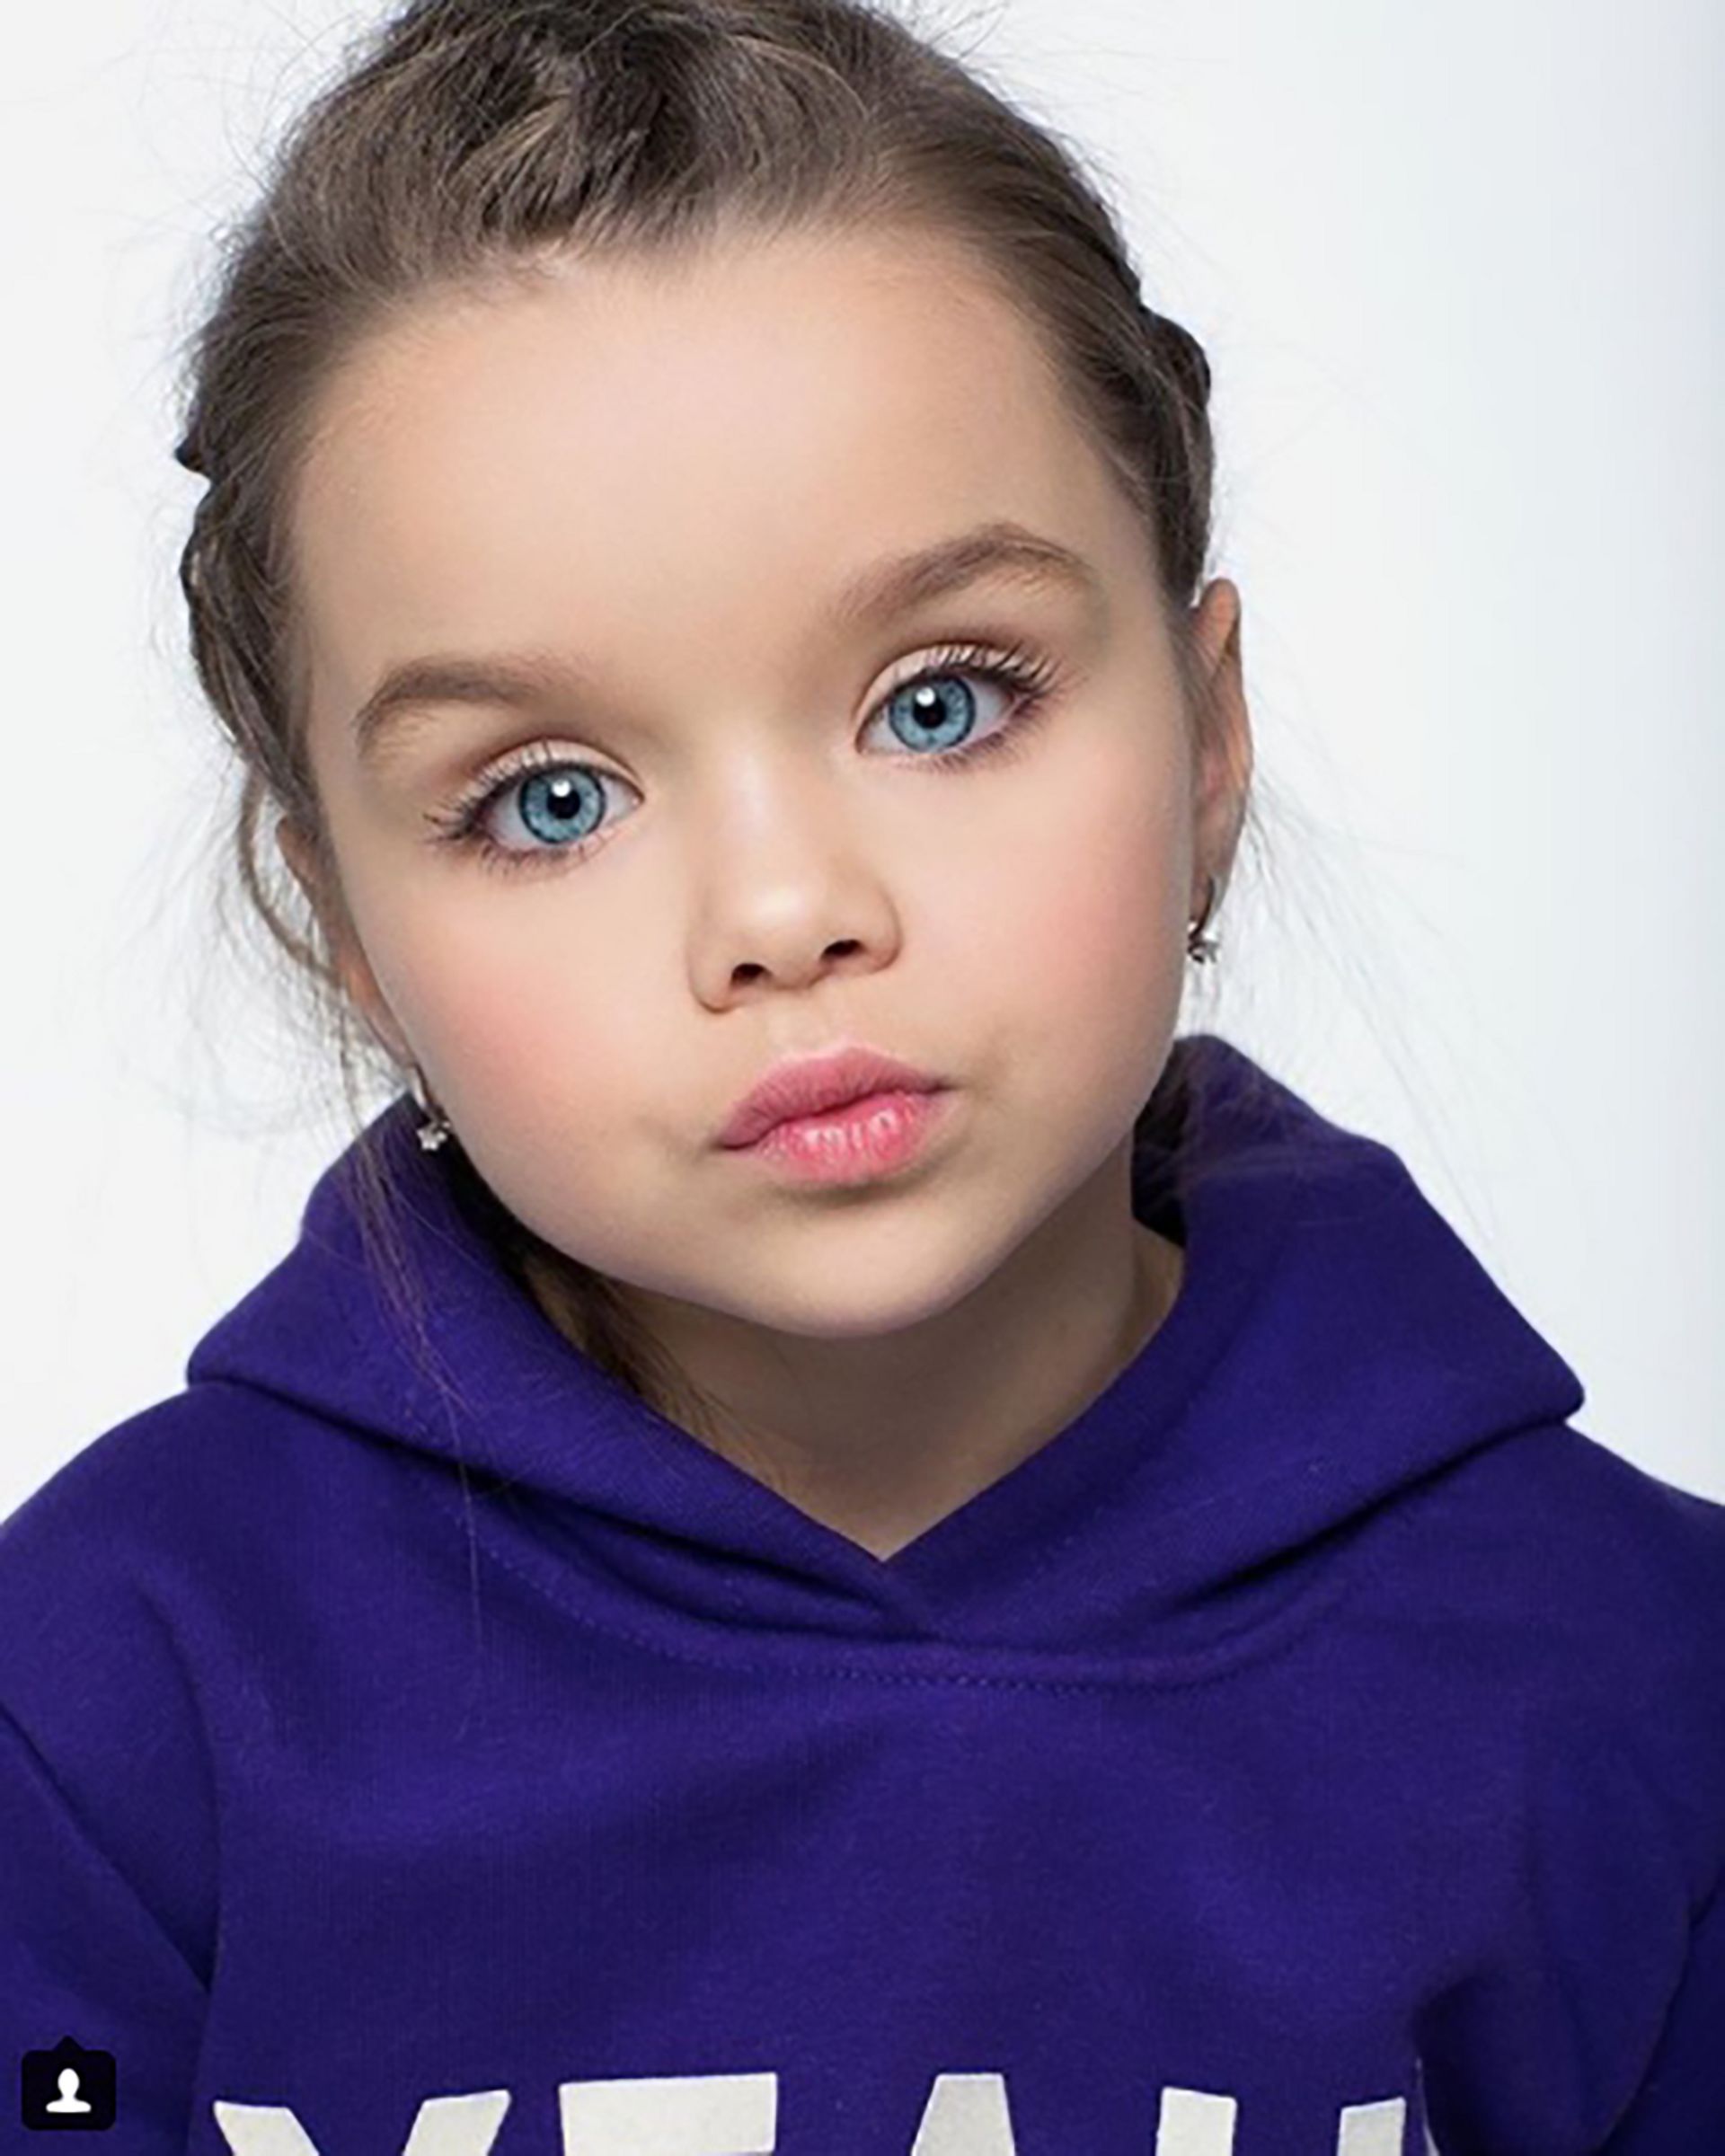 Cette fillette de 6 ans devient la 'plus belle petite fille du monde' 